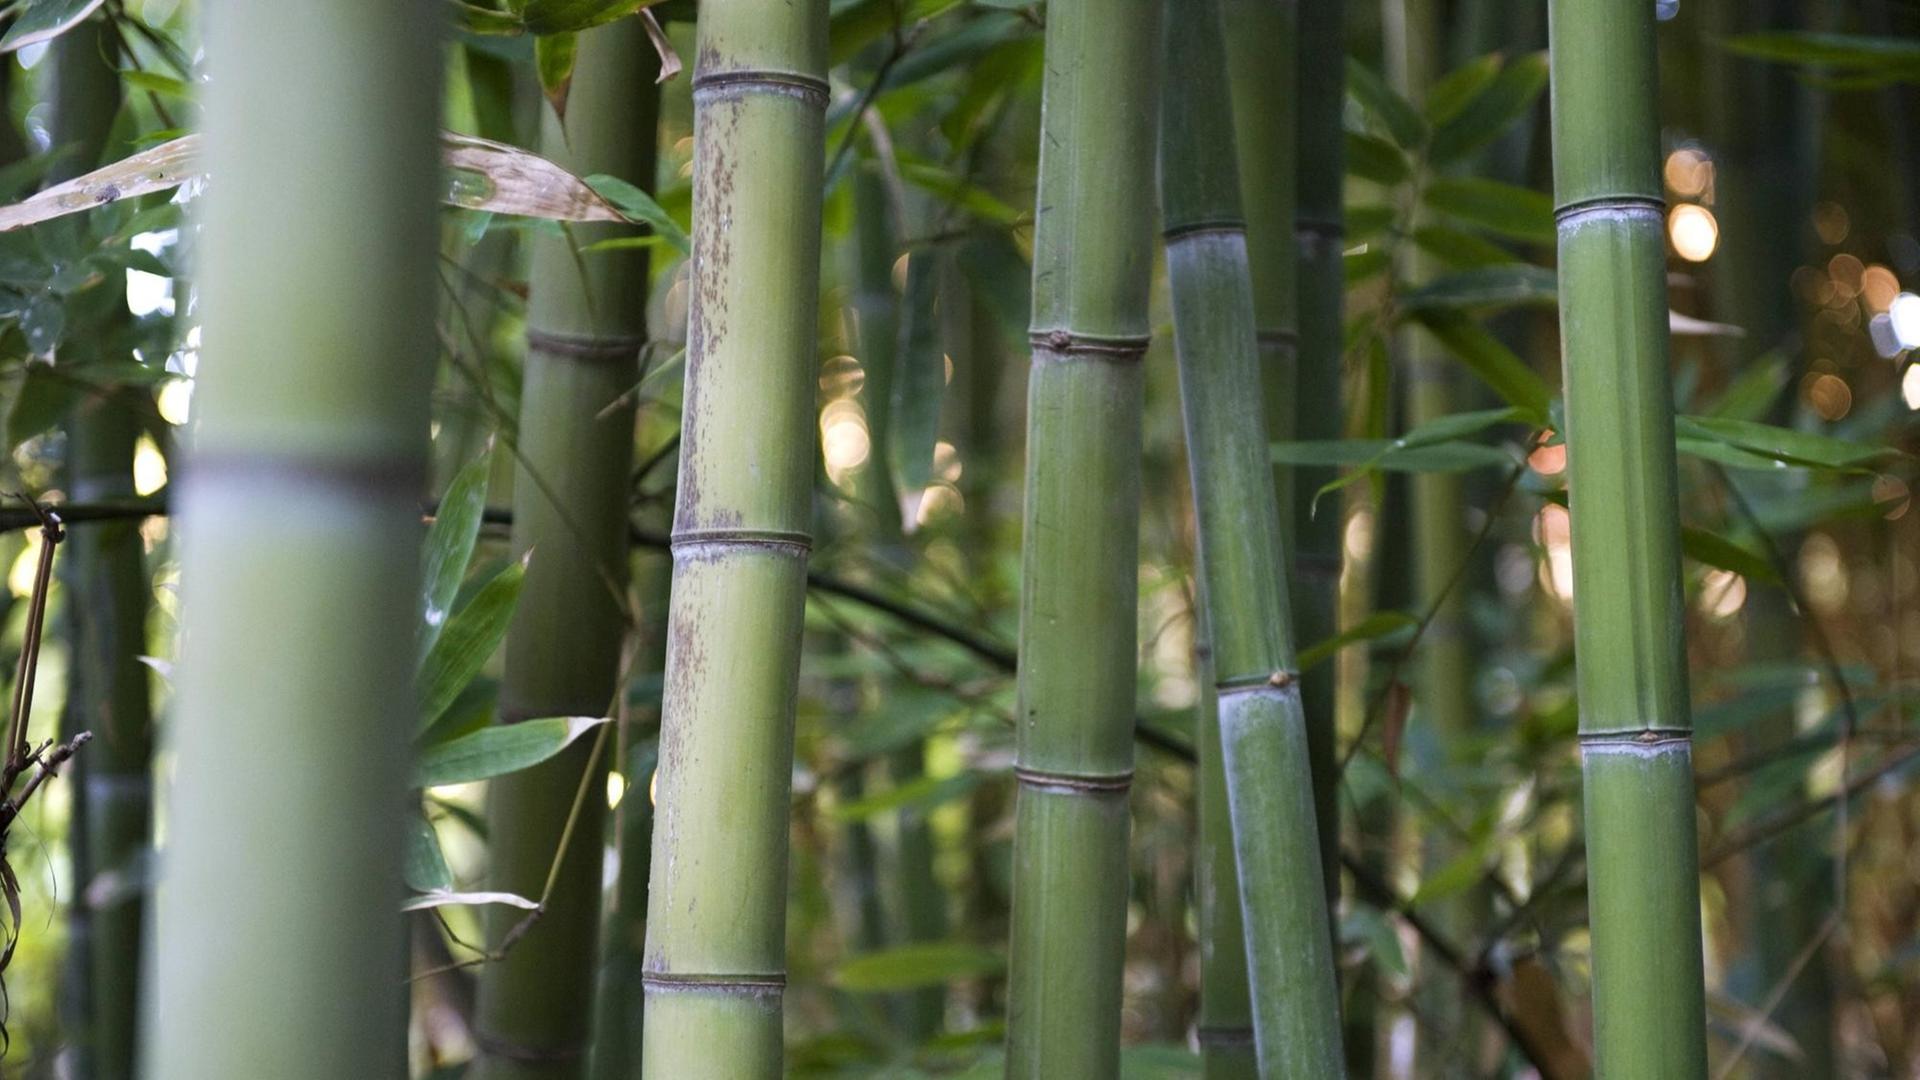 Bamboo stalks, close-up PUBLICATIONxINxGERxSUIxAUTxONLY Copyright: JérômexGorin B26429613